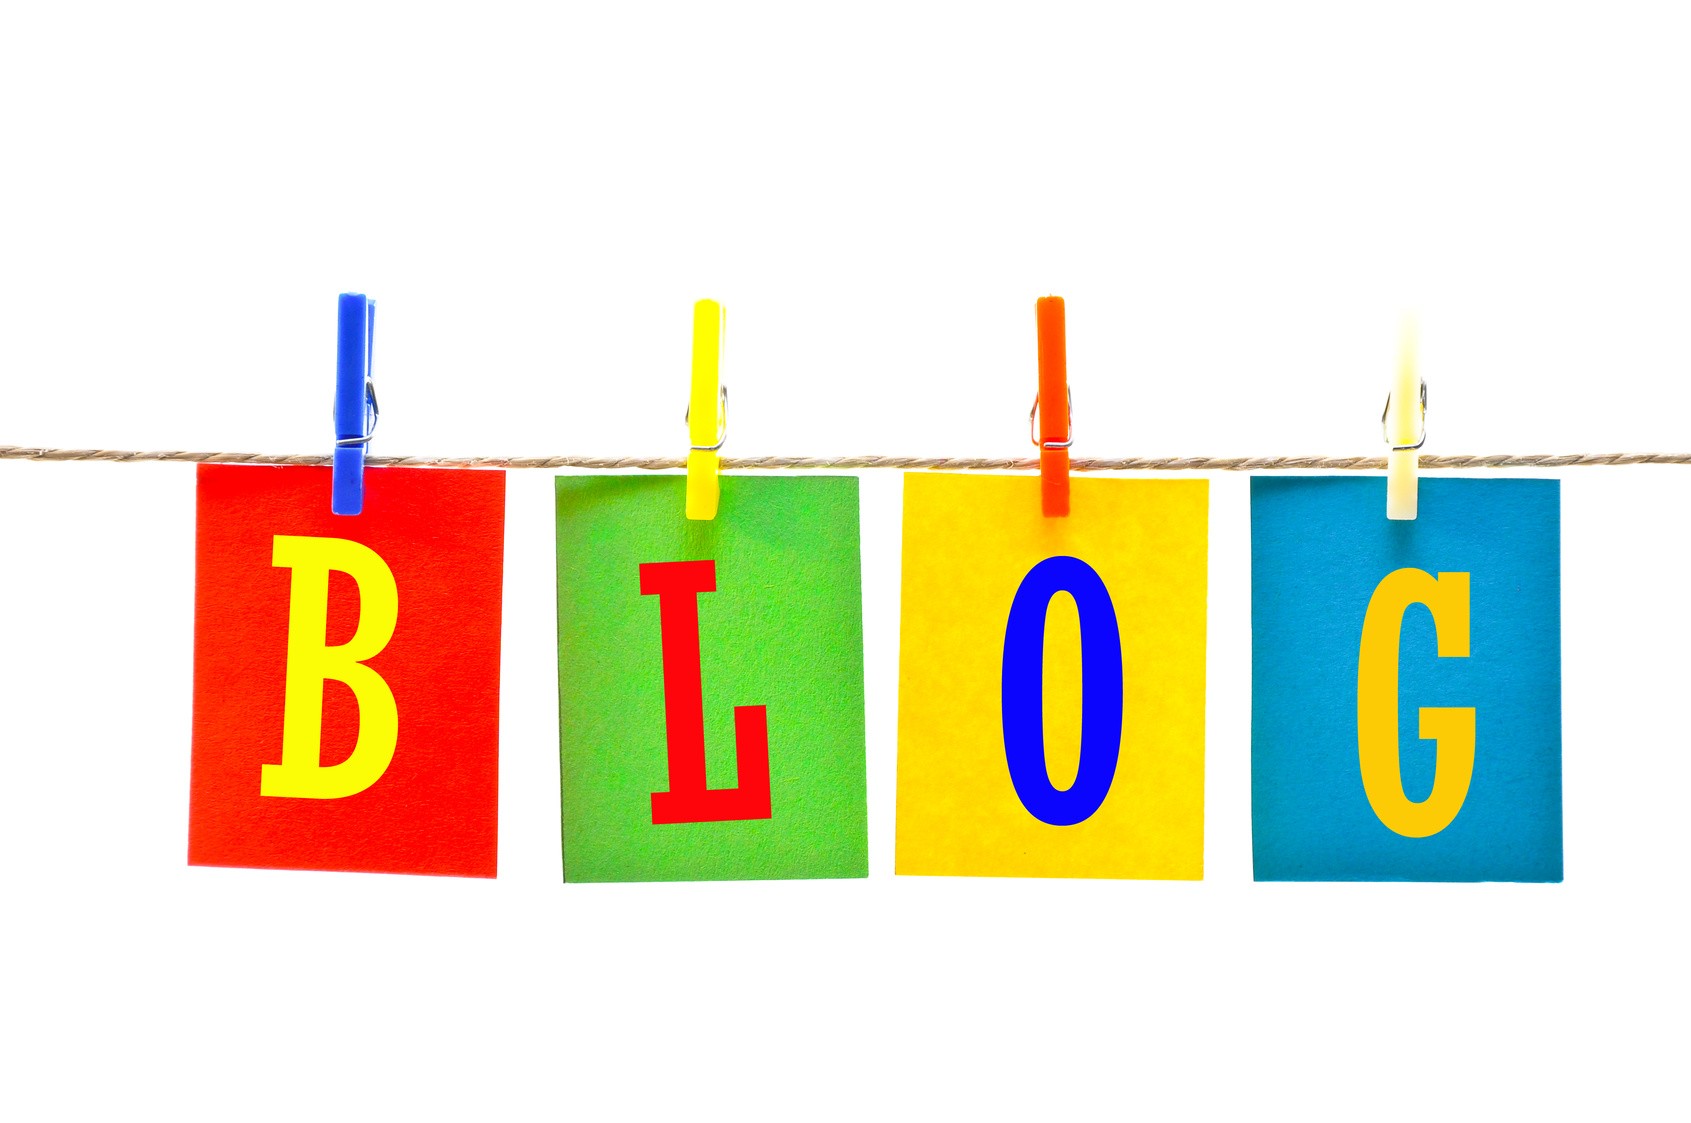 Ein Blog hilft Menschen, wichtige oder kuriose Informationen weiterzugeben.